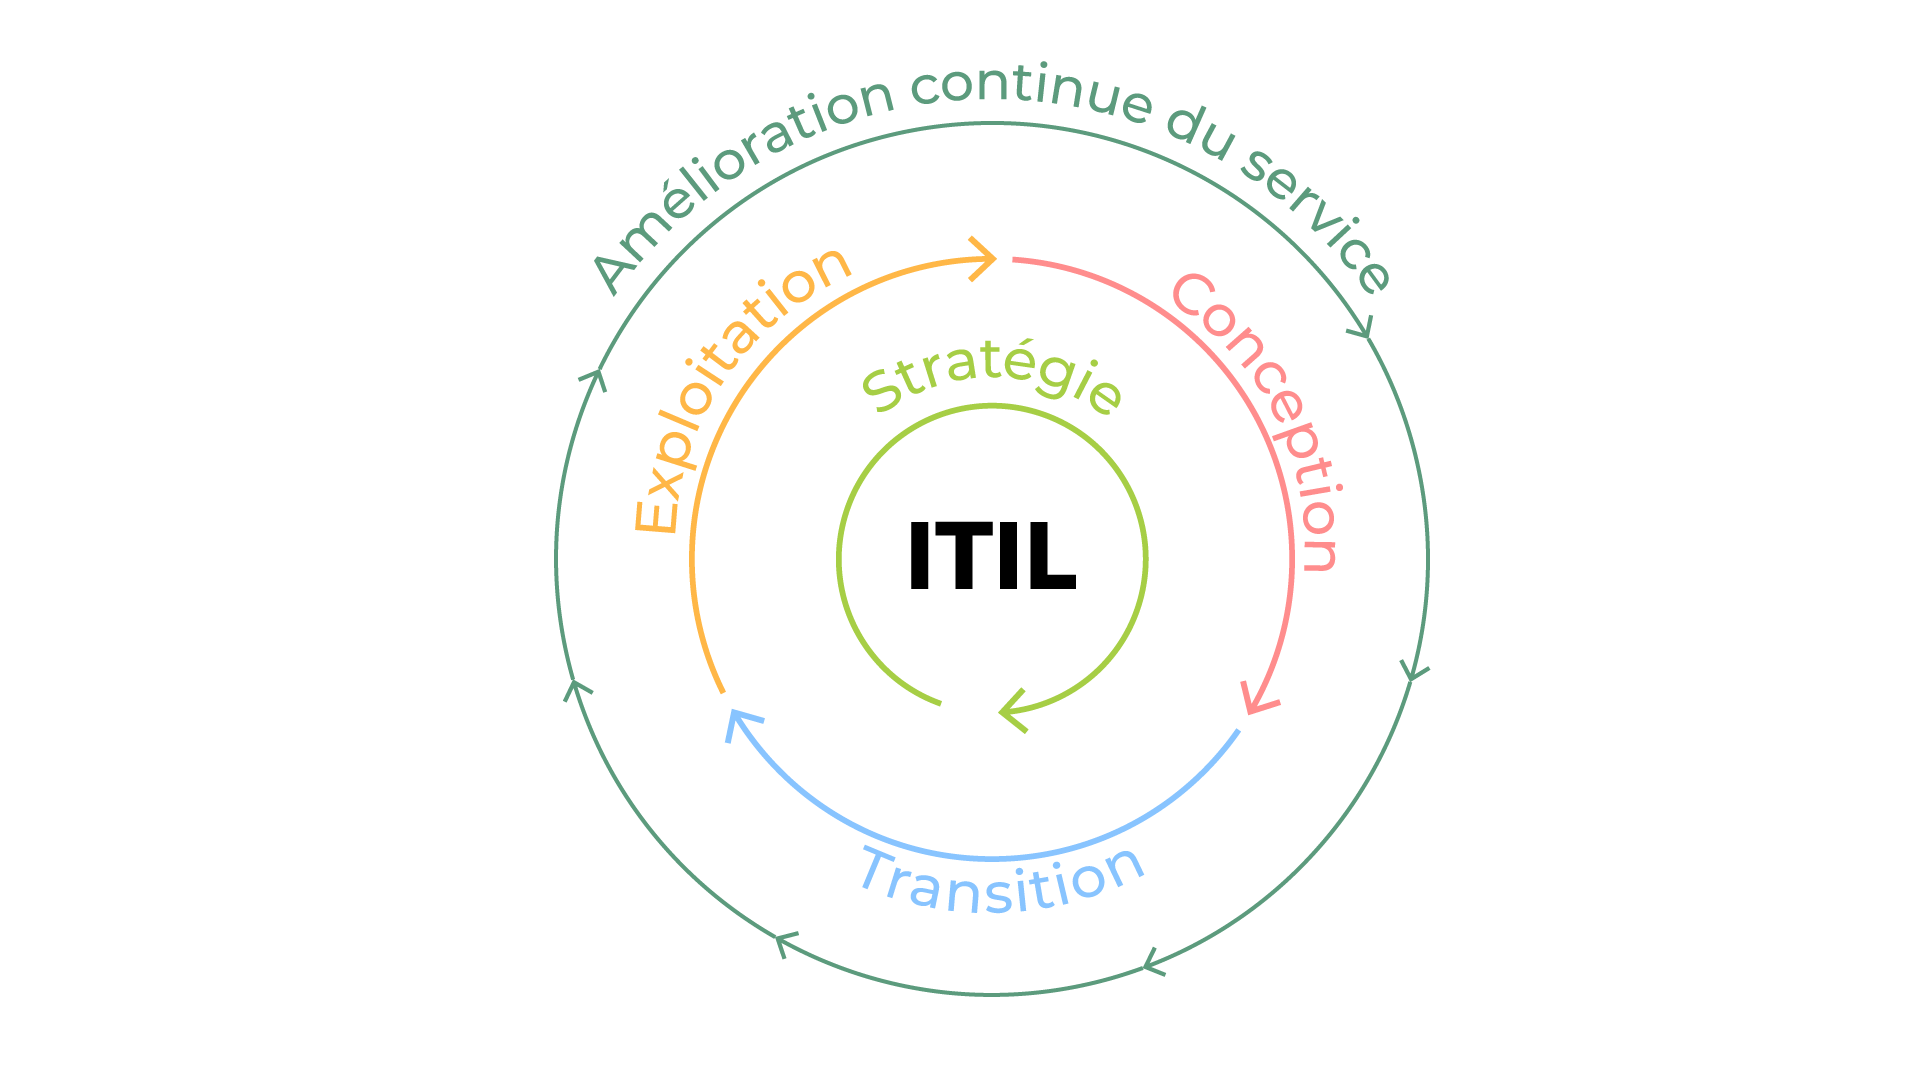 Schéma du cycle de vie d'un service selon ITIL : Stratégie au centre, Conception, Exploitation, Transition, puis Amélioration continue du service tout autour des autres étapes.